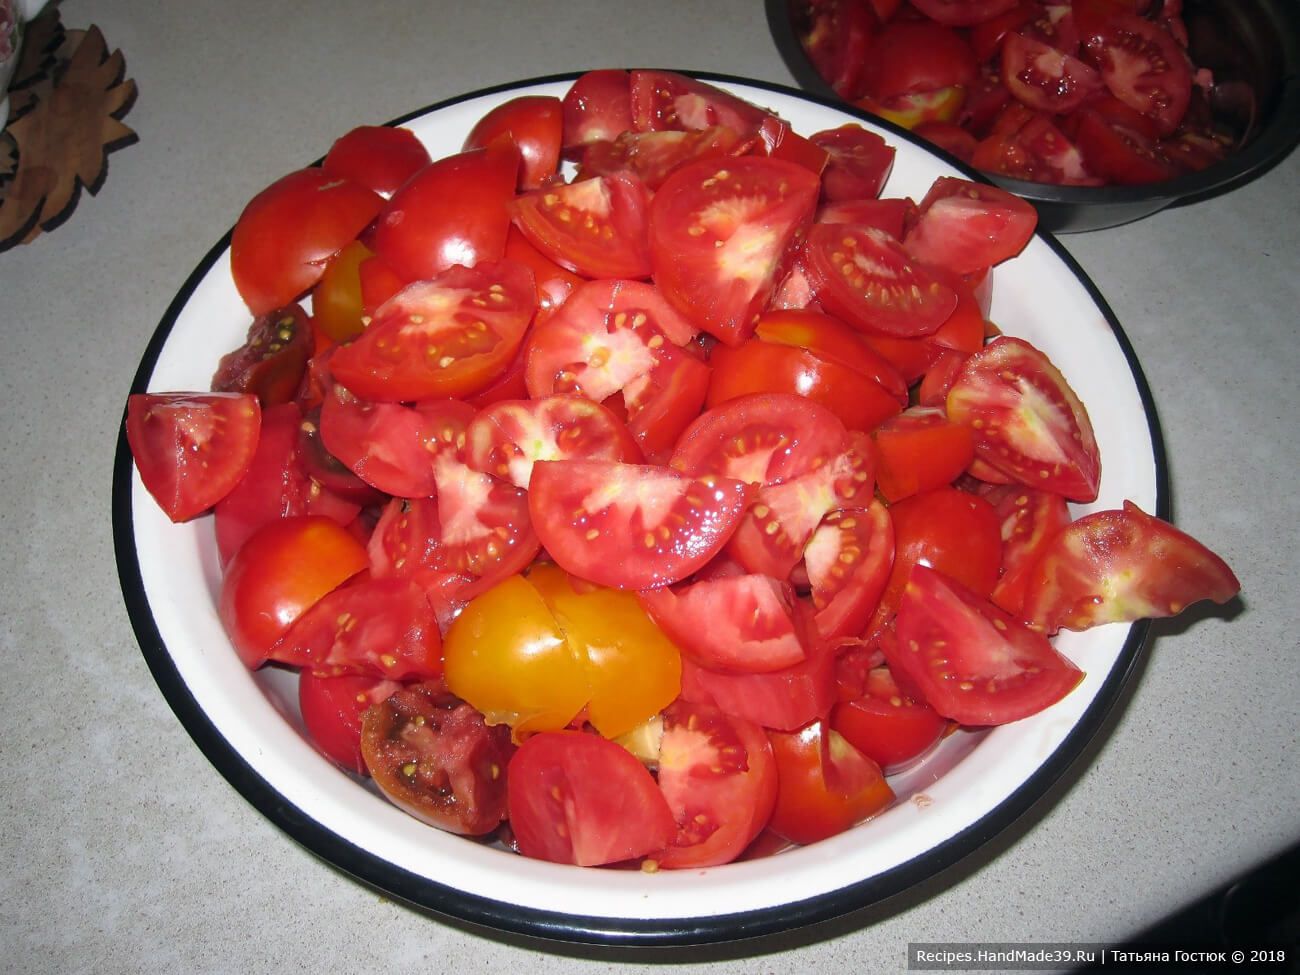 Настоящий томатный сок в банках – фото шаг 2. Удаляем с помидоров возможные изъяны и хвостики, разрезаем плоды на кусочки произвольного размера